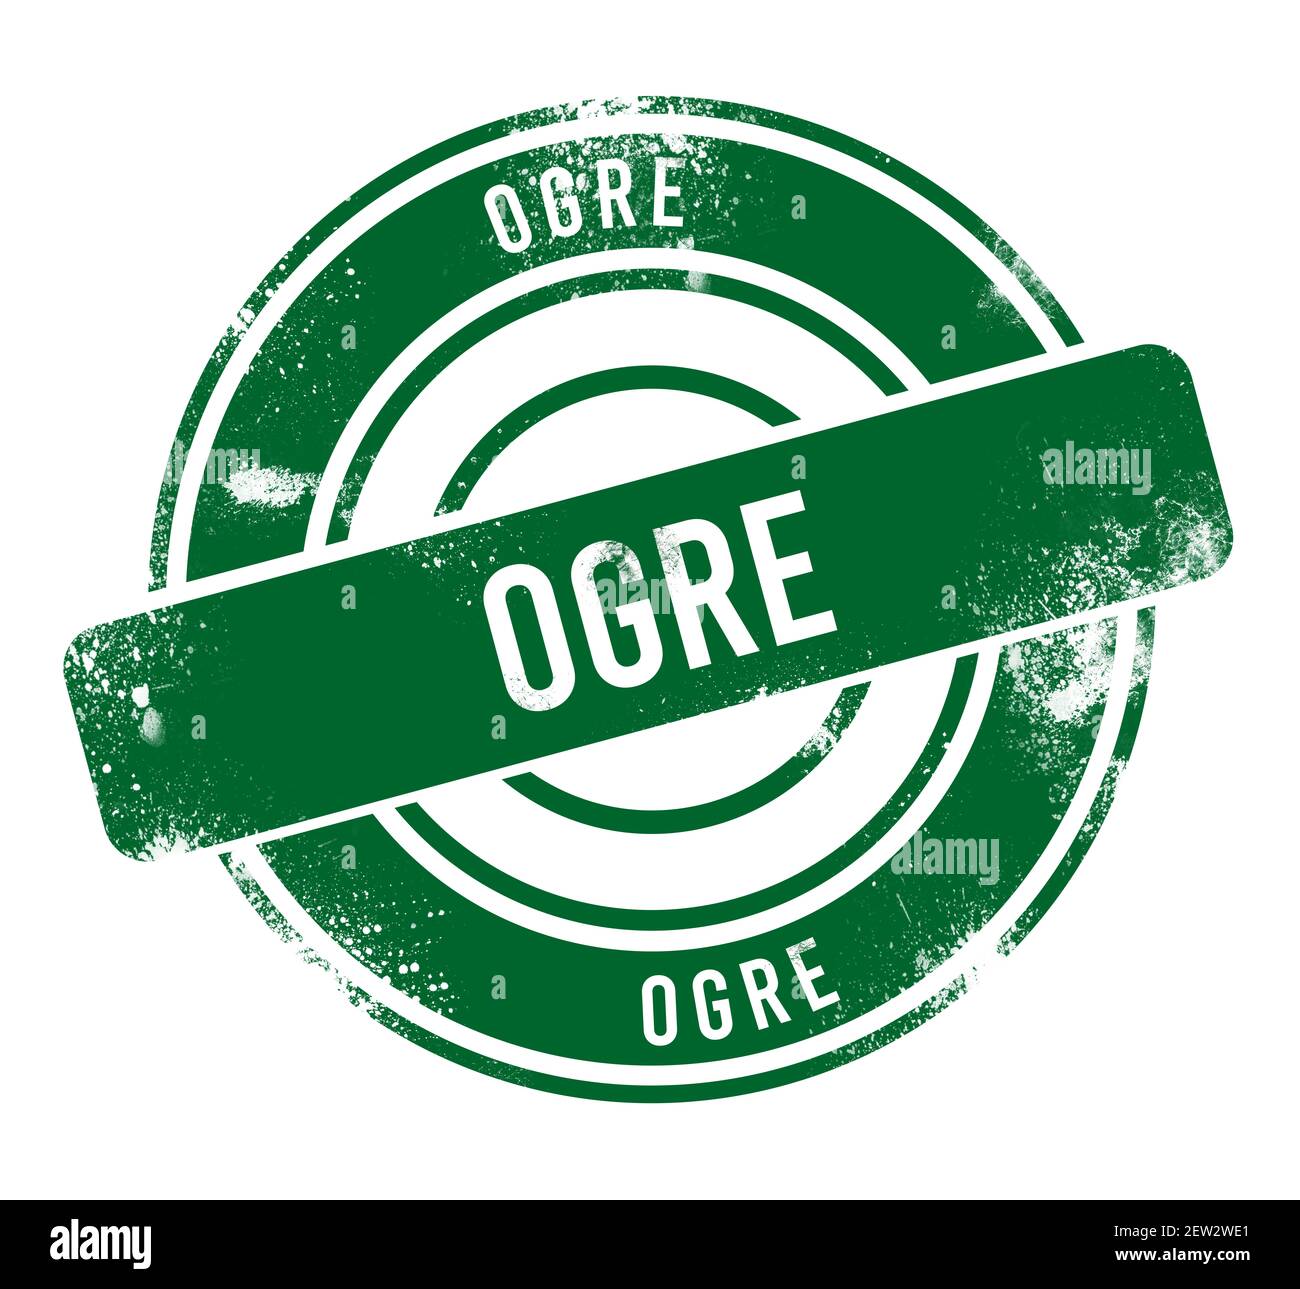 Ogre - green round grunge button, stamp Stock Photo